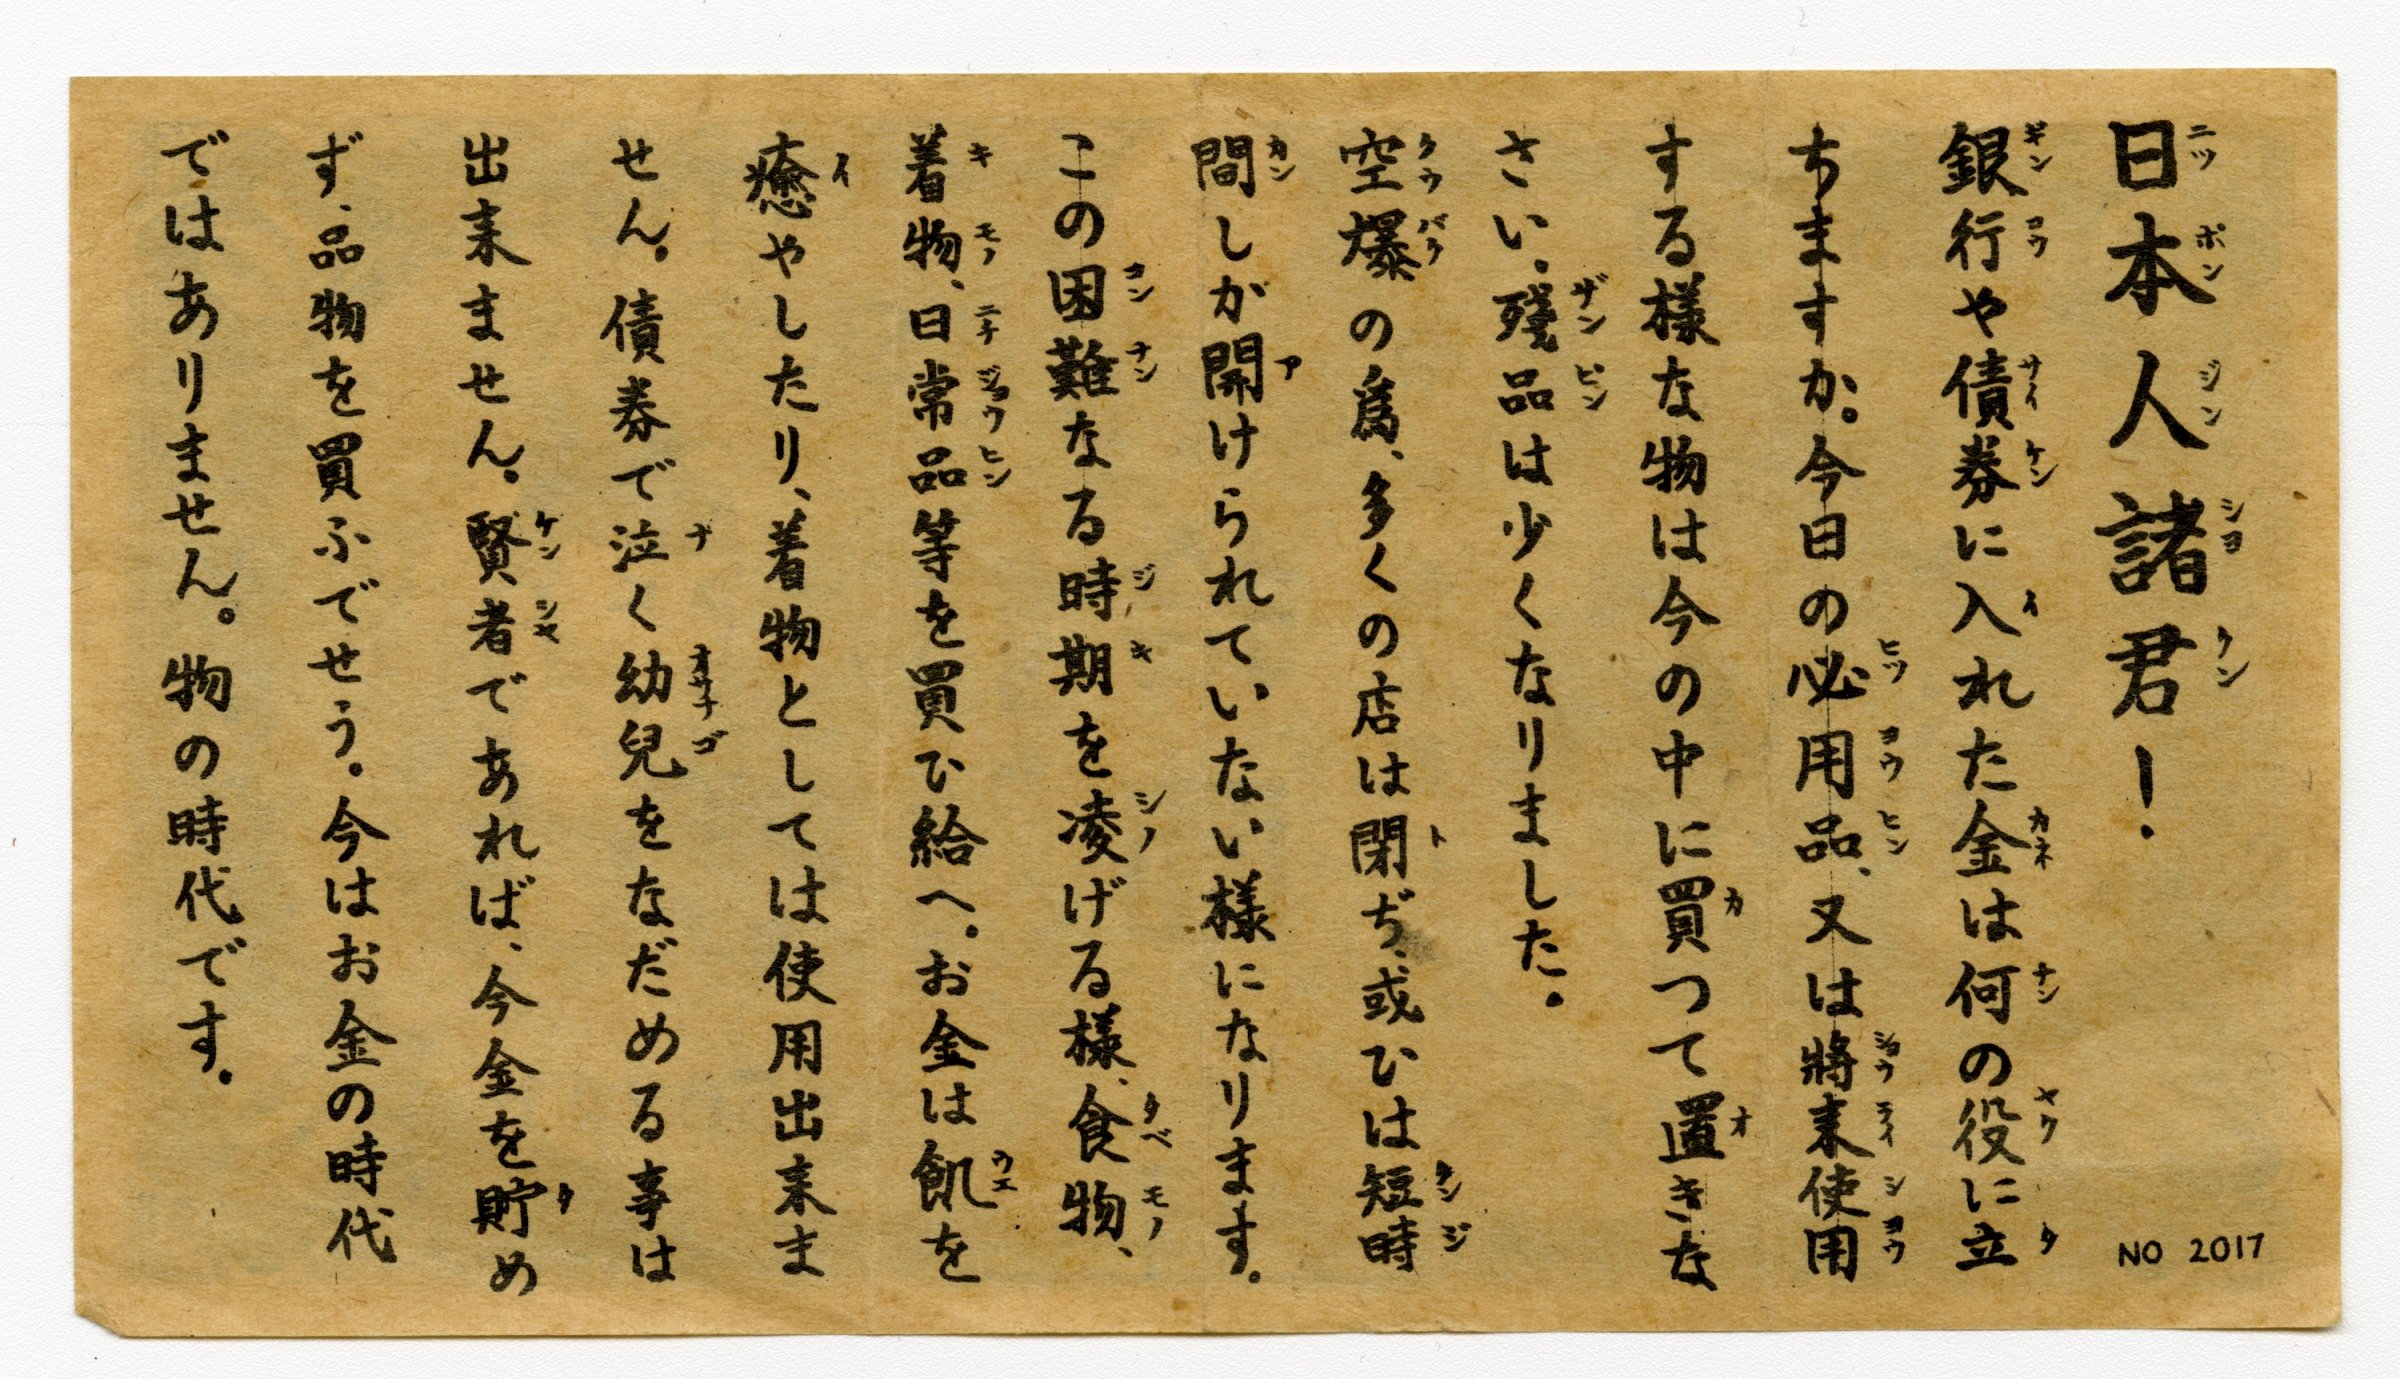 Japan Leaflet WWII